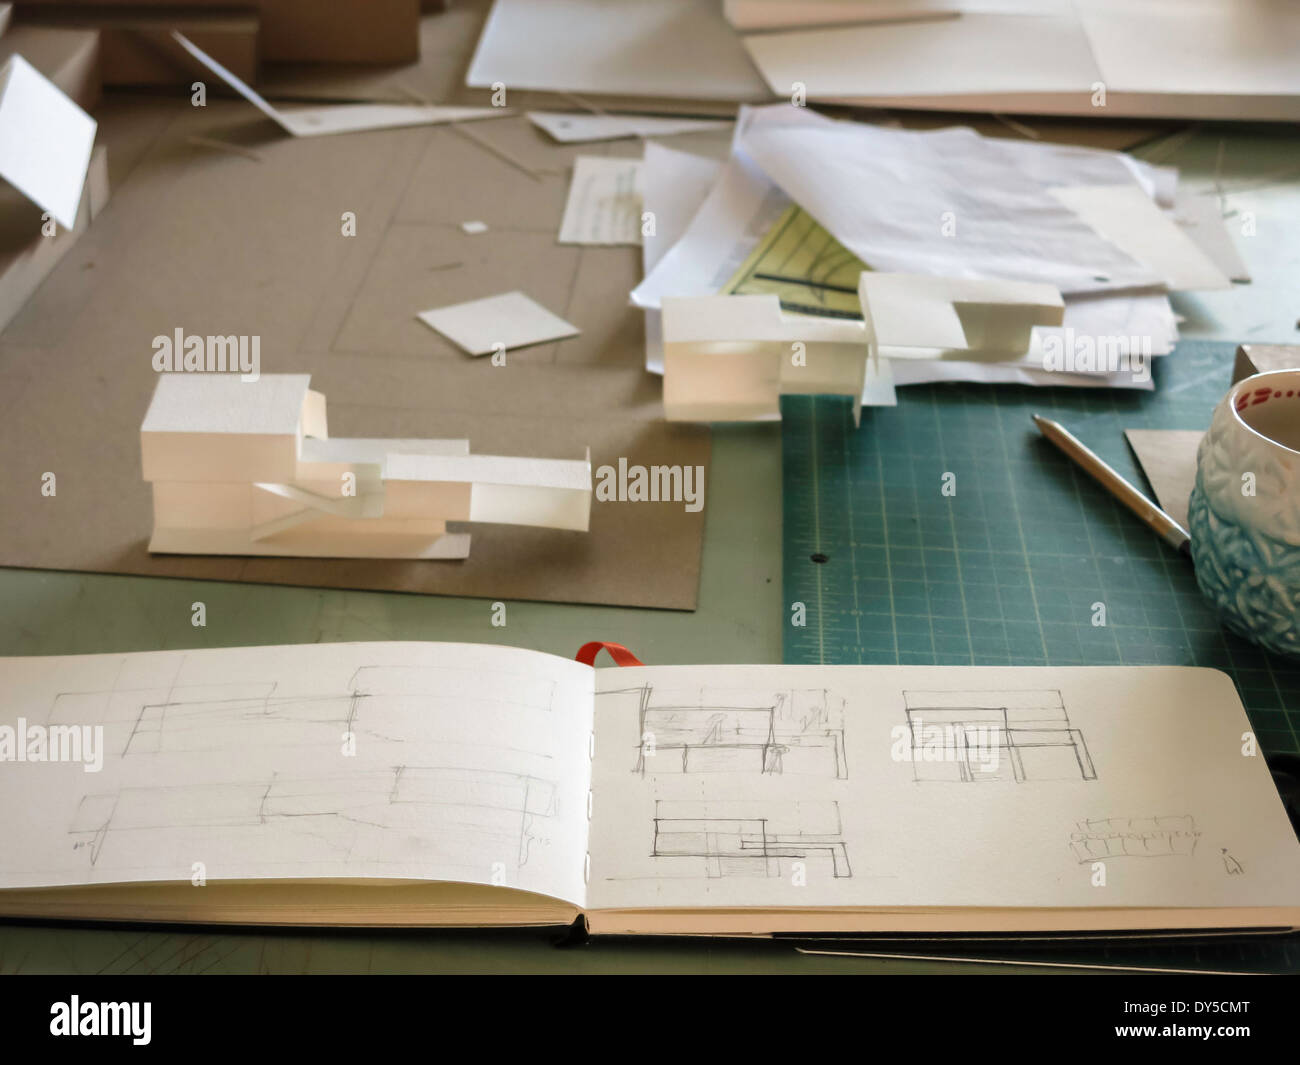 La construcción de modelos, sketch books, Dibujo, aula de estudio del Departamento de Arquitectura de la Universidad de Florida, Gainesville, FL, EE.UU. Foto de stock